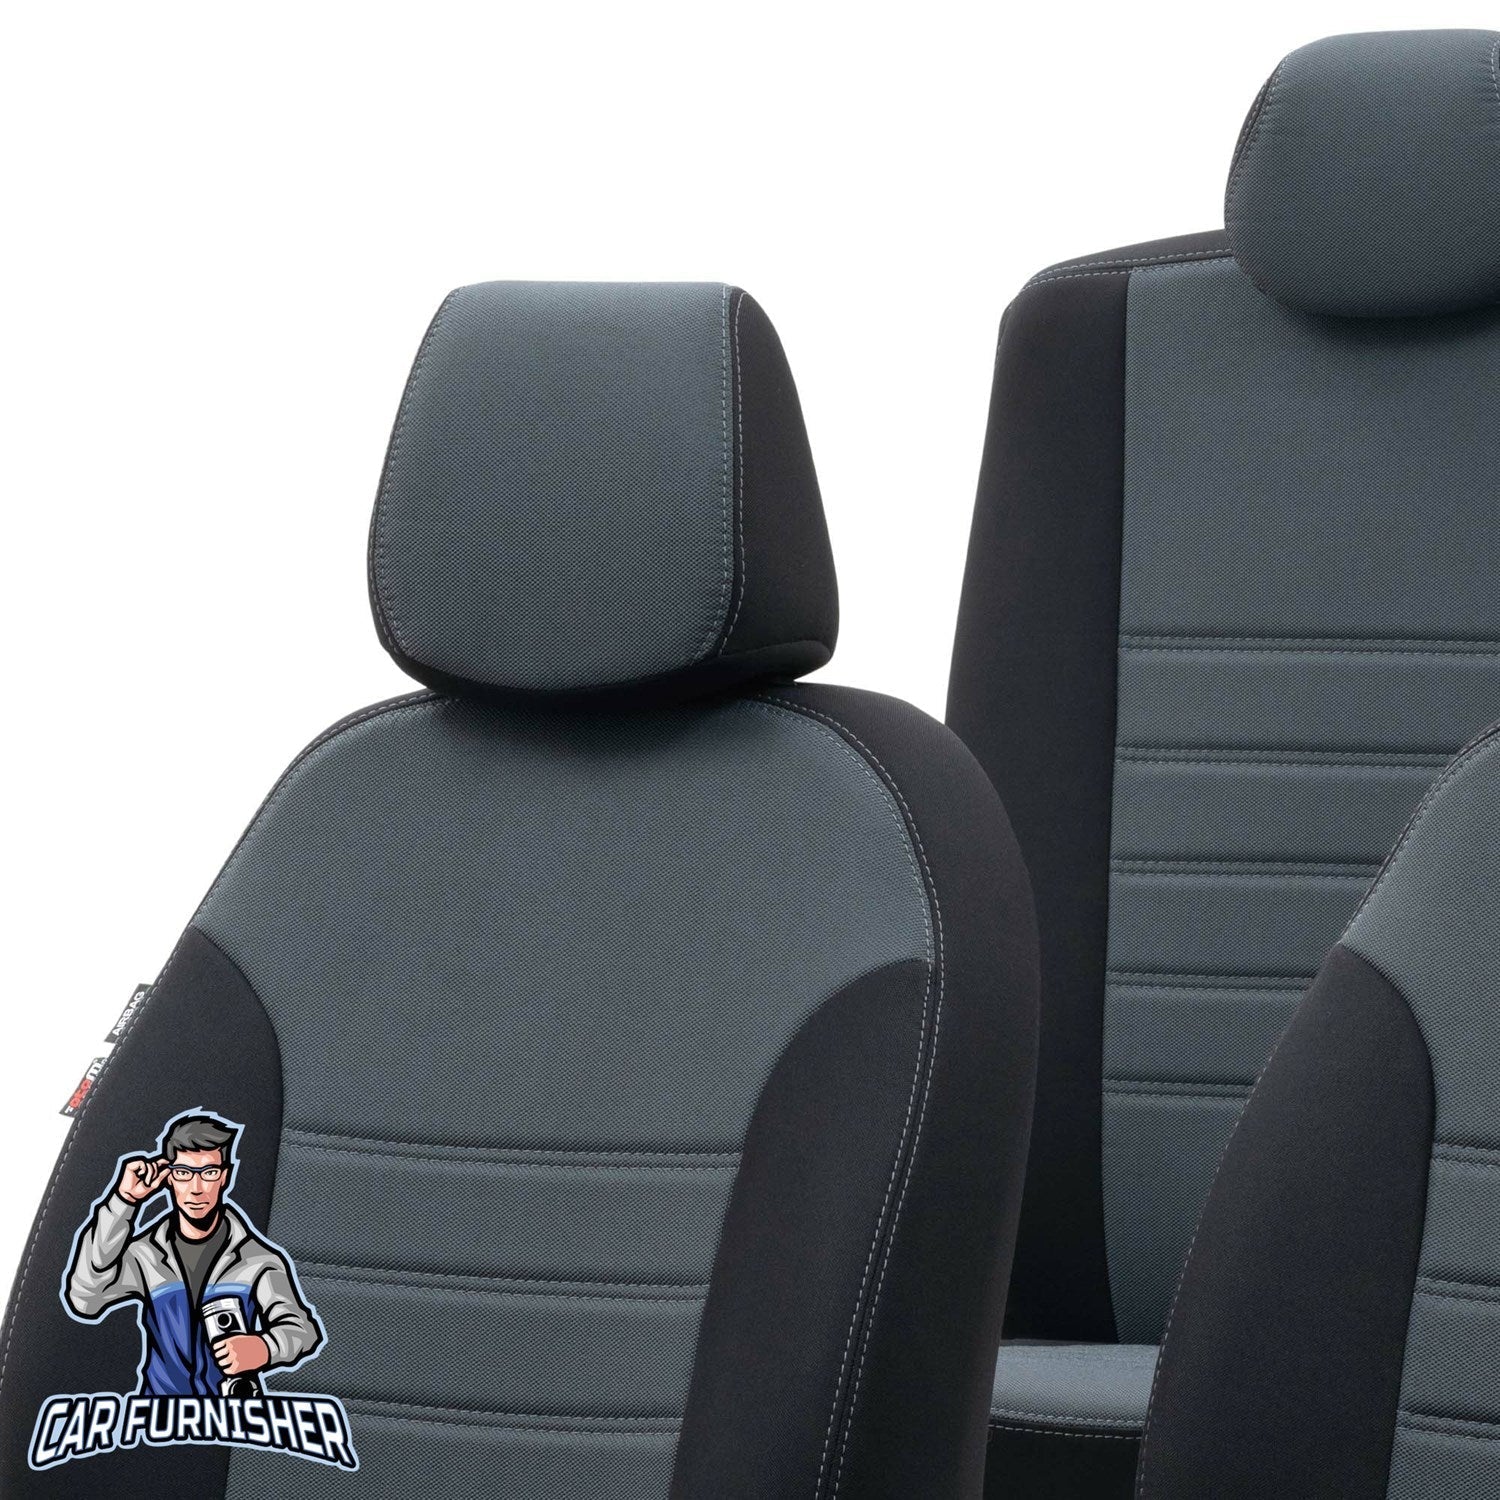 Chery Tiggo Seat Covers Original Jacquard Design Smoked Black Jacquard Fabric